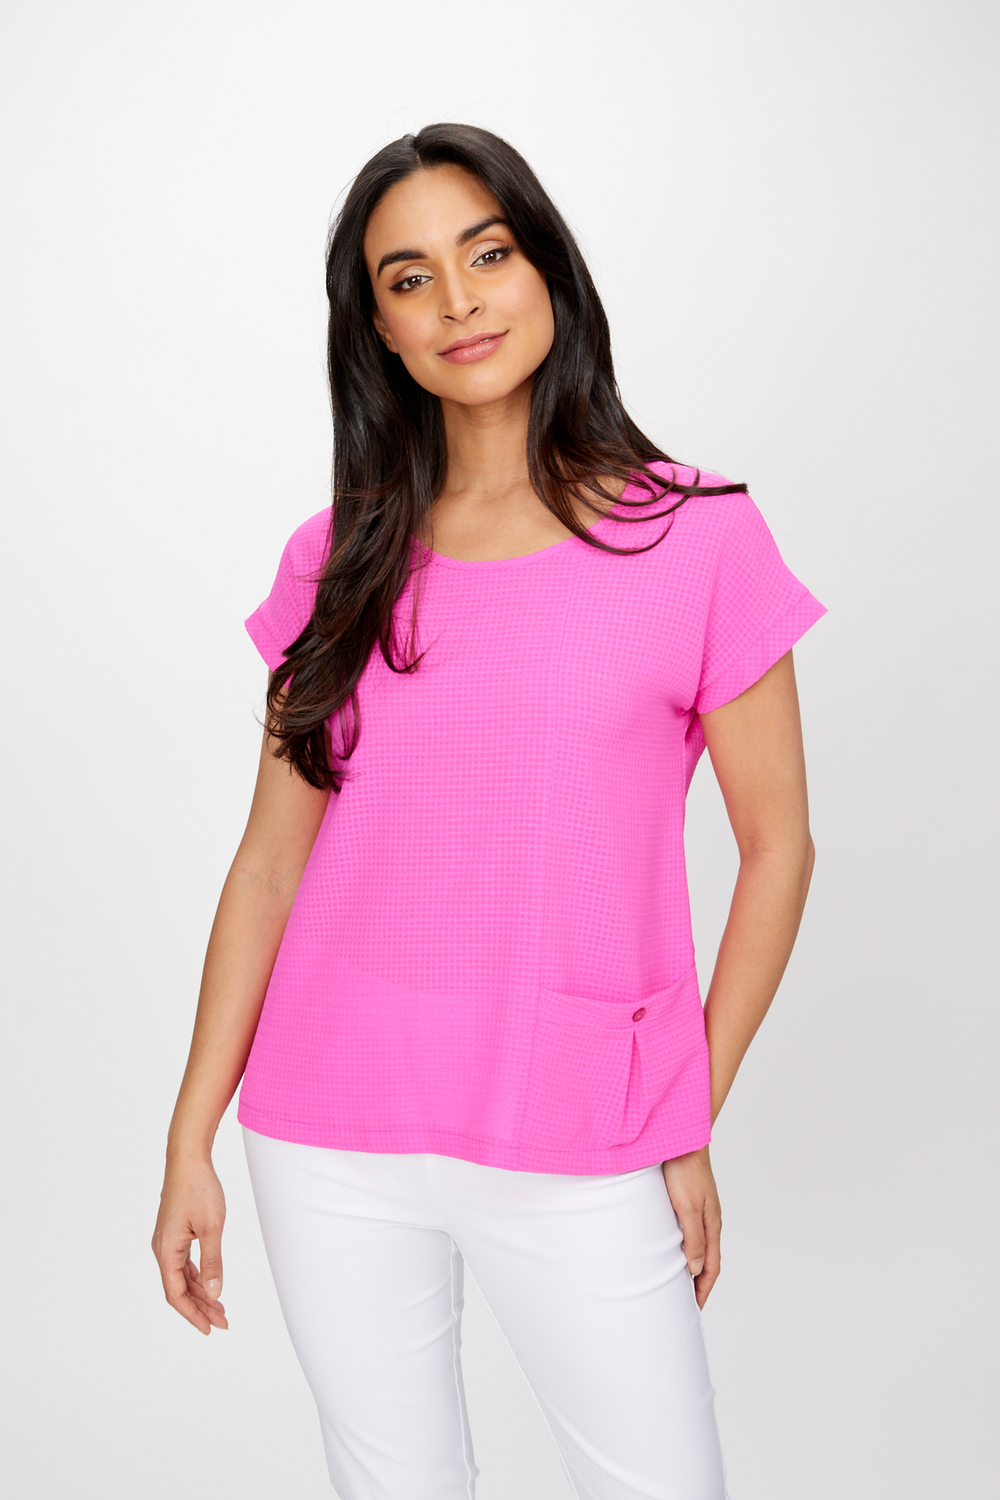 T-shirt, fins carreaux texturés modèle 241217. Ultra Pink